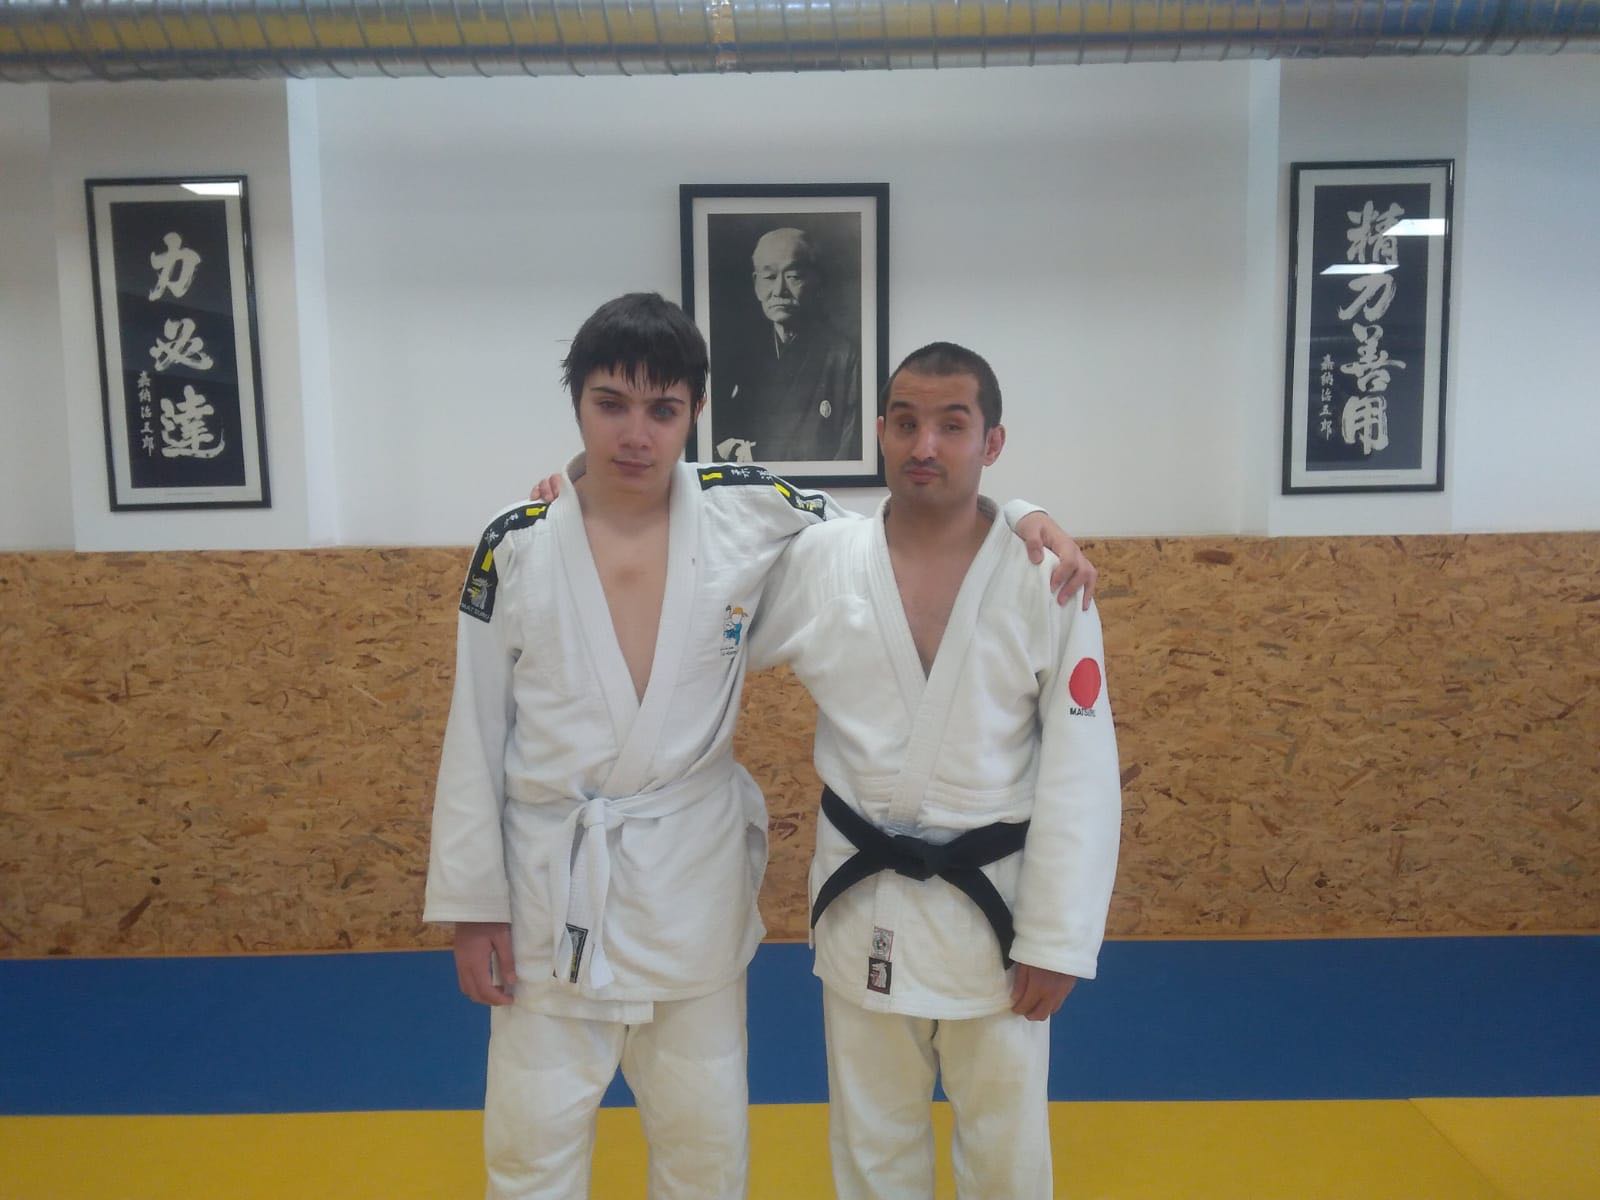 Judo: Sérgio Mendes e Guilherme Mateus convocados para a Seleção Nacional Paralímpica